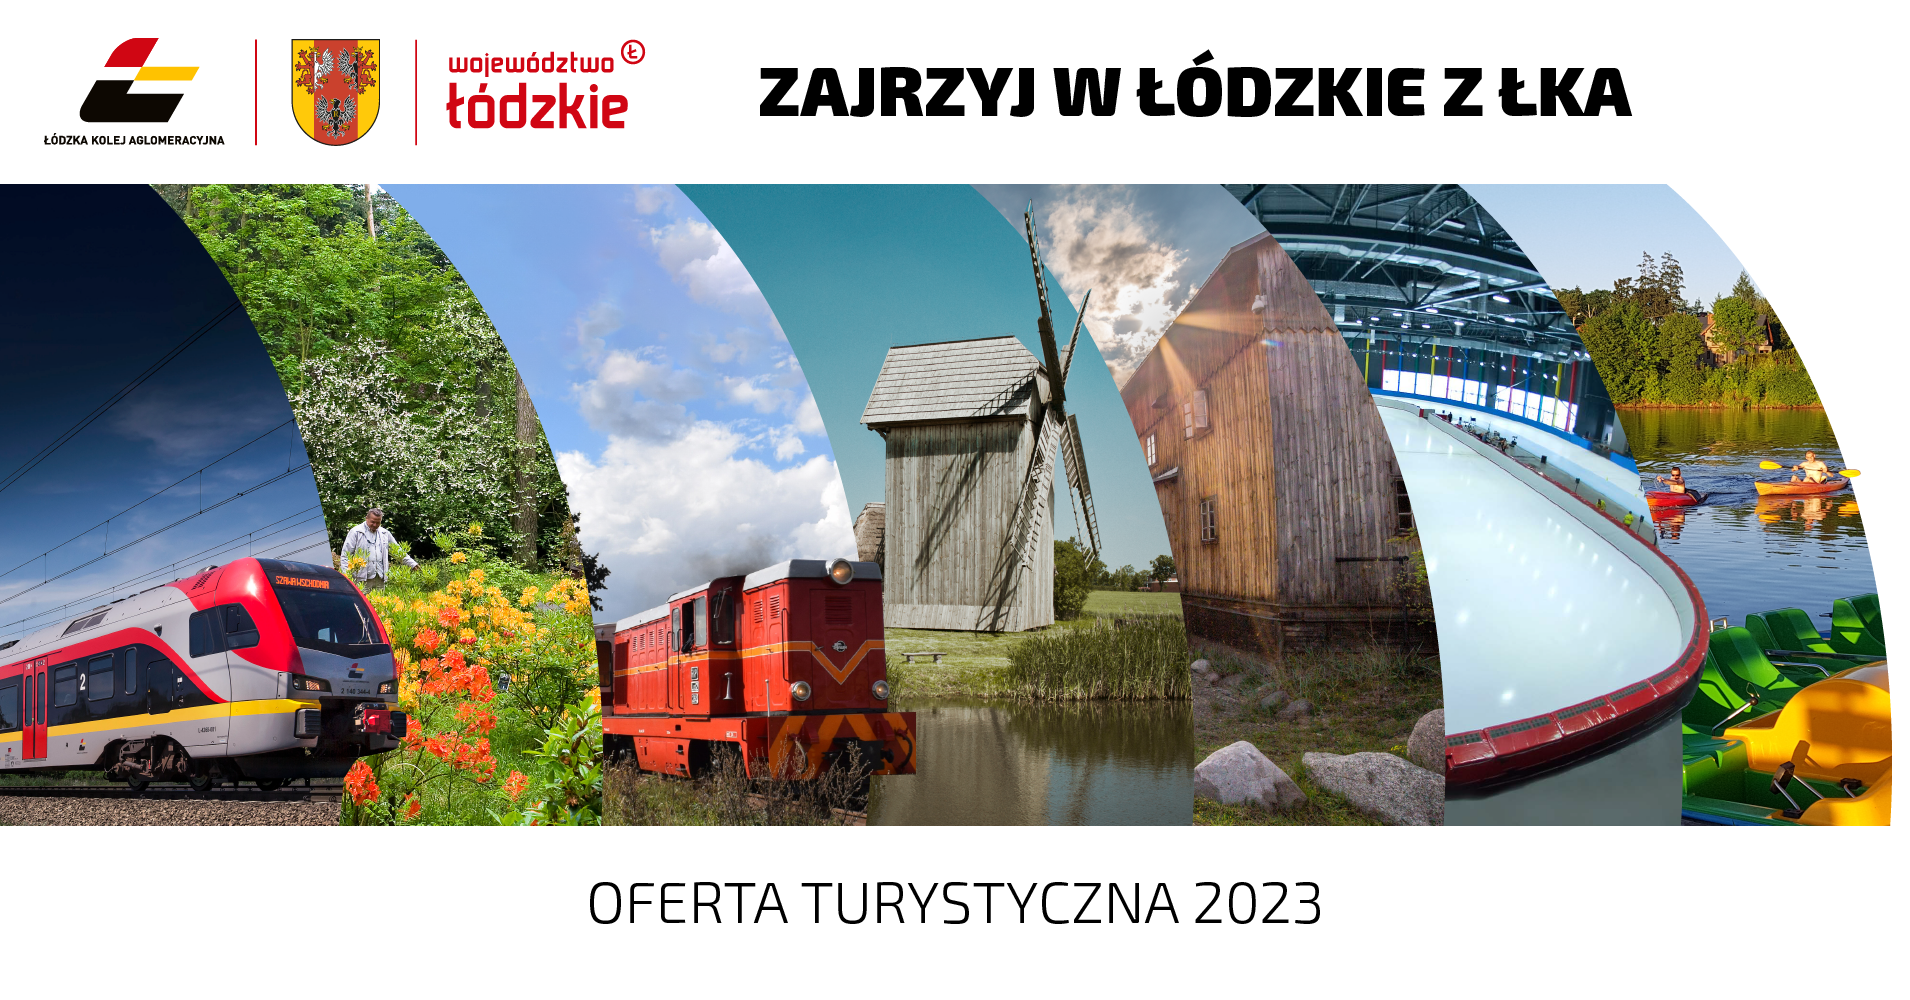 Zajrzyj w Łodzkie 2023 - oferta turystyczna 2023 i element graficzny: mozaika zdjęć z atrakcji opisanych poniżej